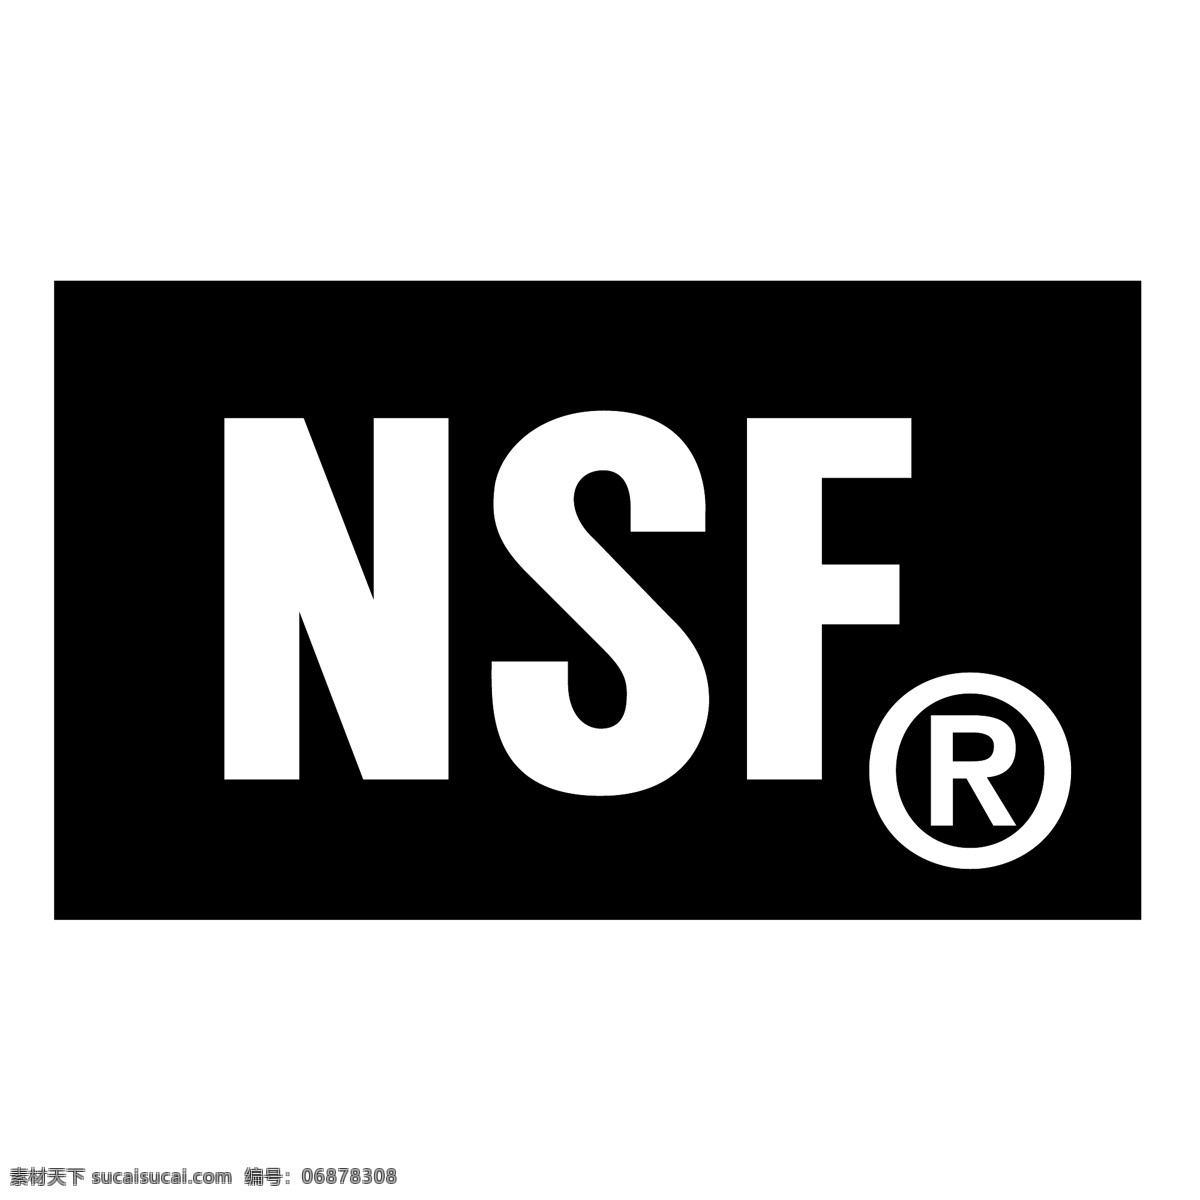 美国 国家科学基金 会 nsf 标志 向量 标识 nsf的标志 eps矢量 国际 国际奥委会 向量的nsf 矢量 矢量nsf noc 蓝色